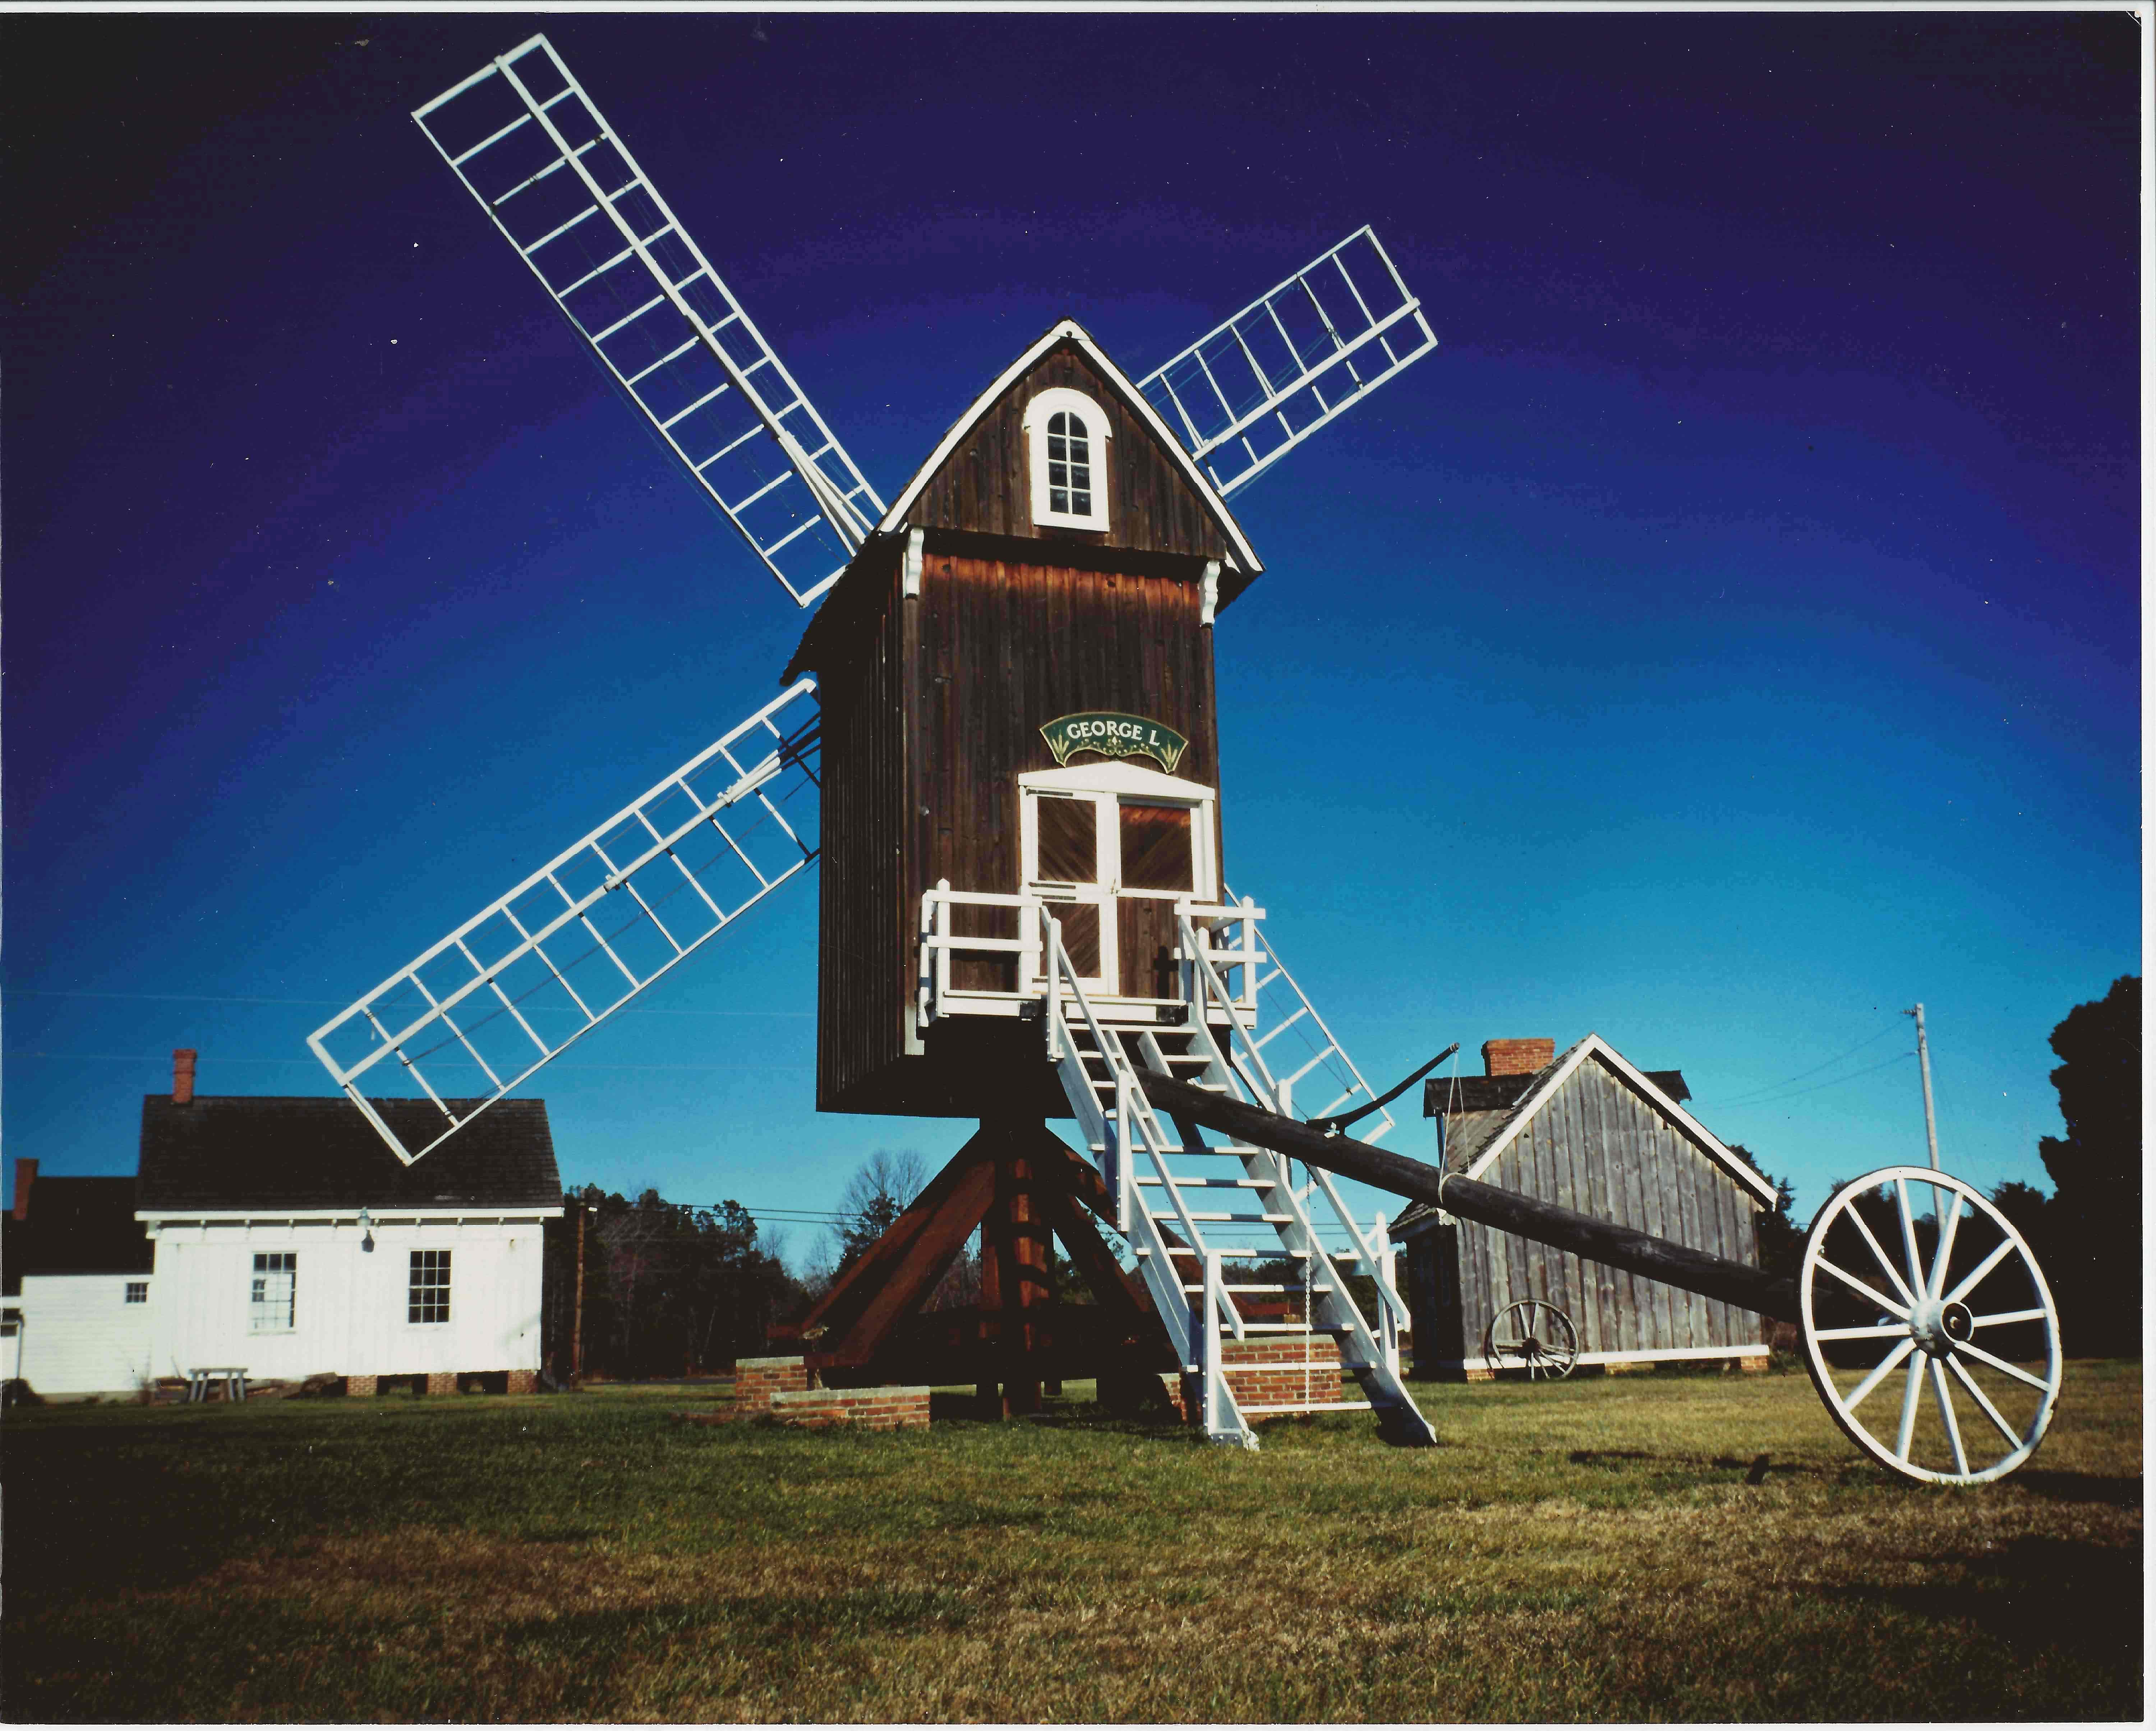 Spocott Windmill | Spocott Windmill Foundation, Inc